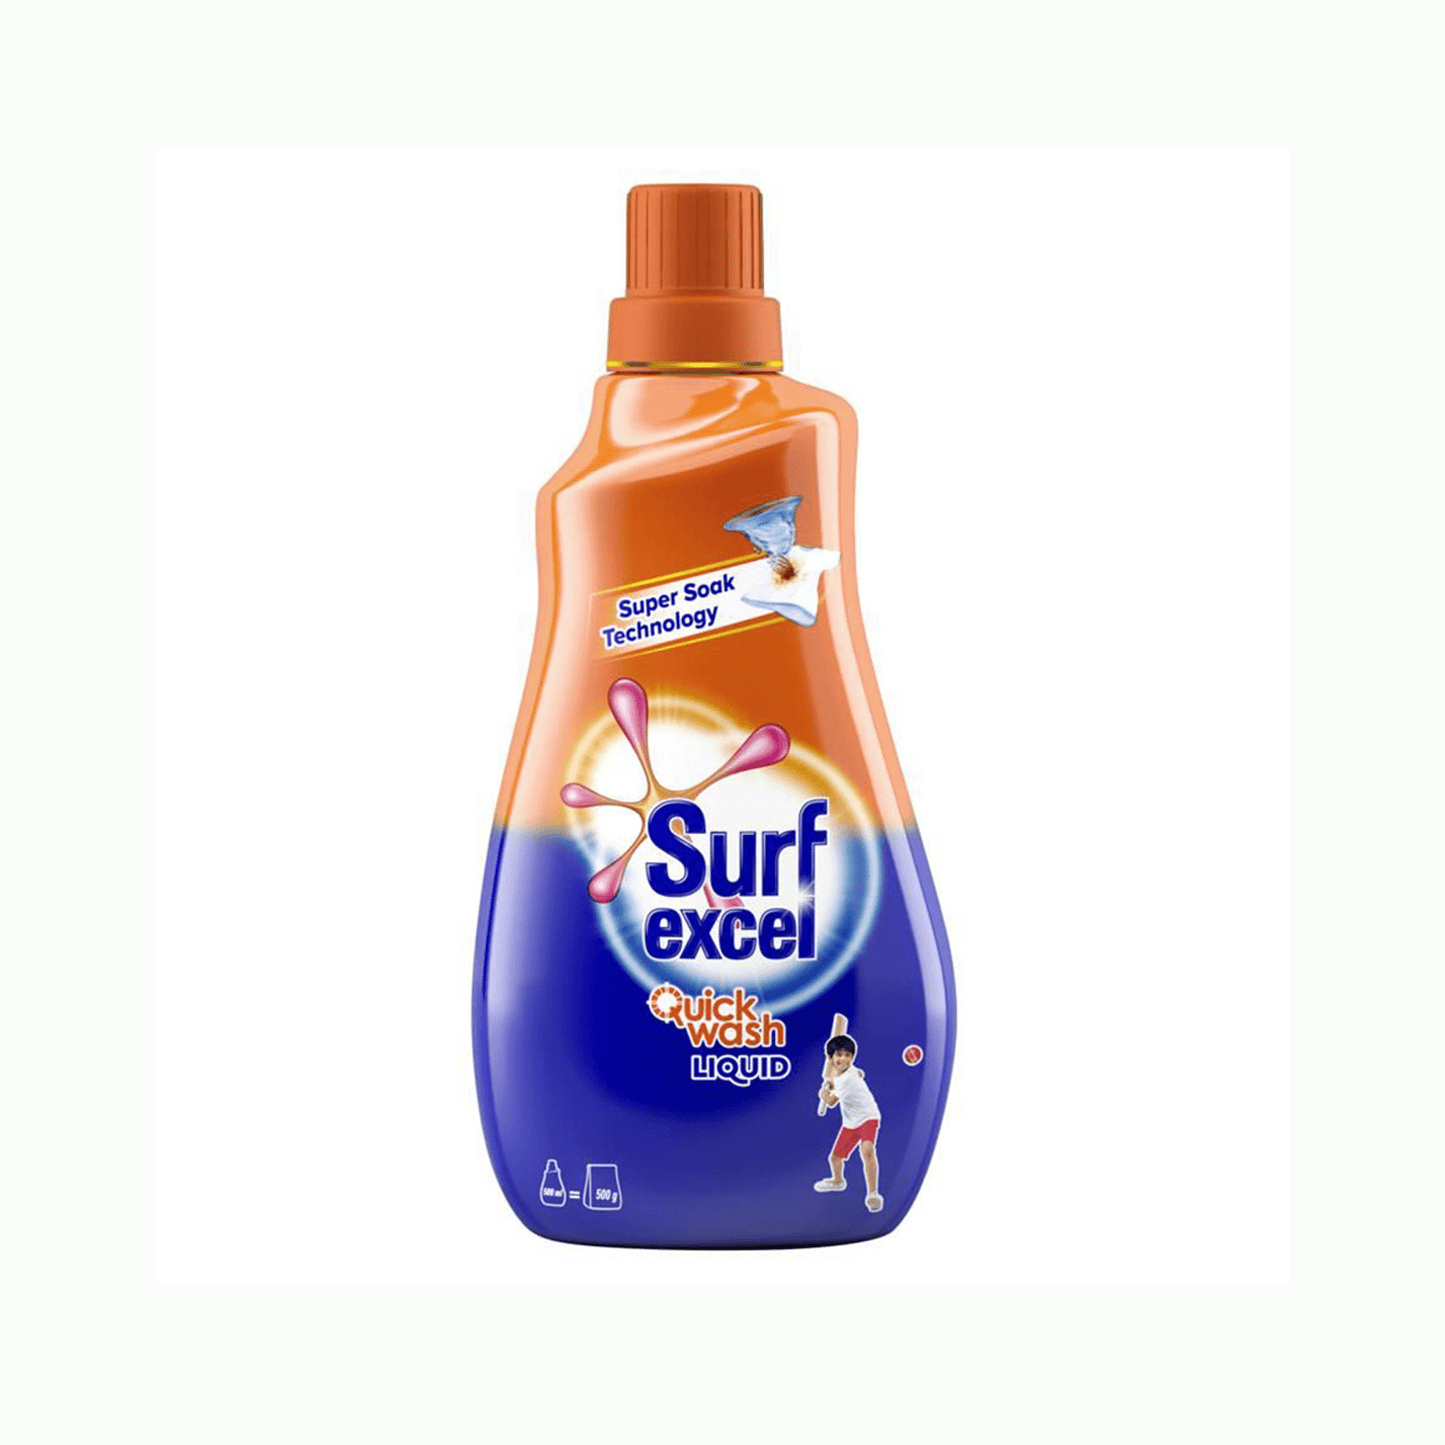 Surfexcel Quick Wash Liquid.